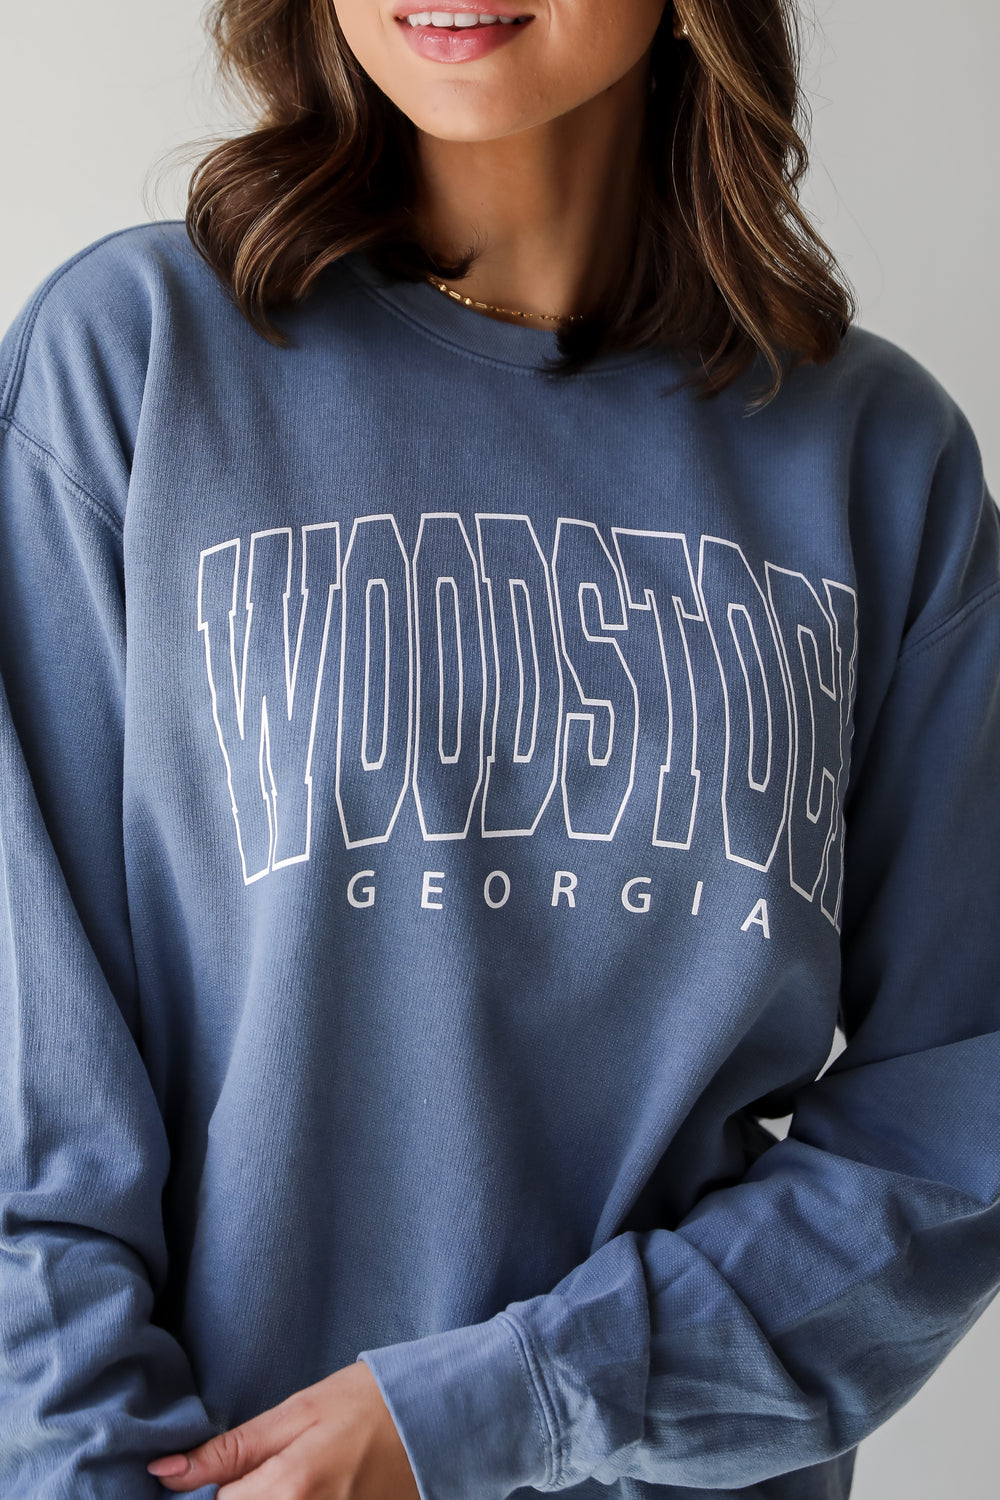 Denim Woodstock Georgia Sweatshirt